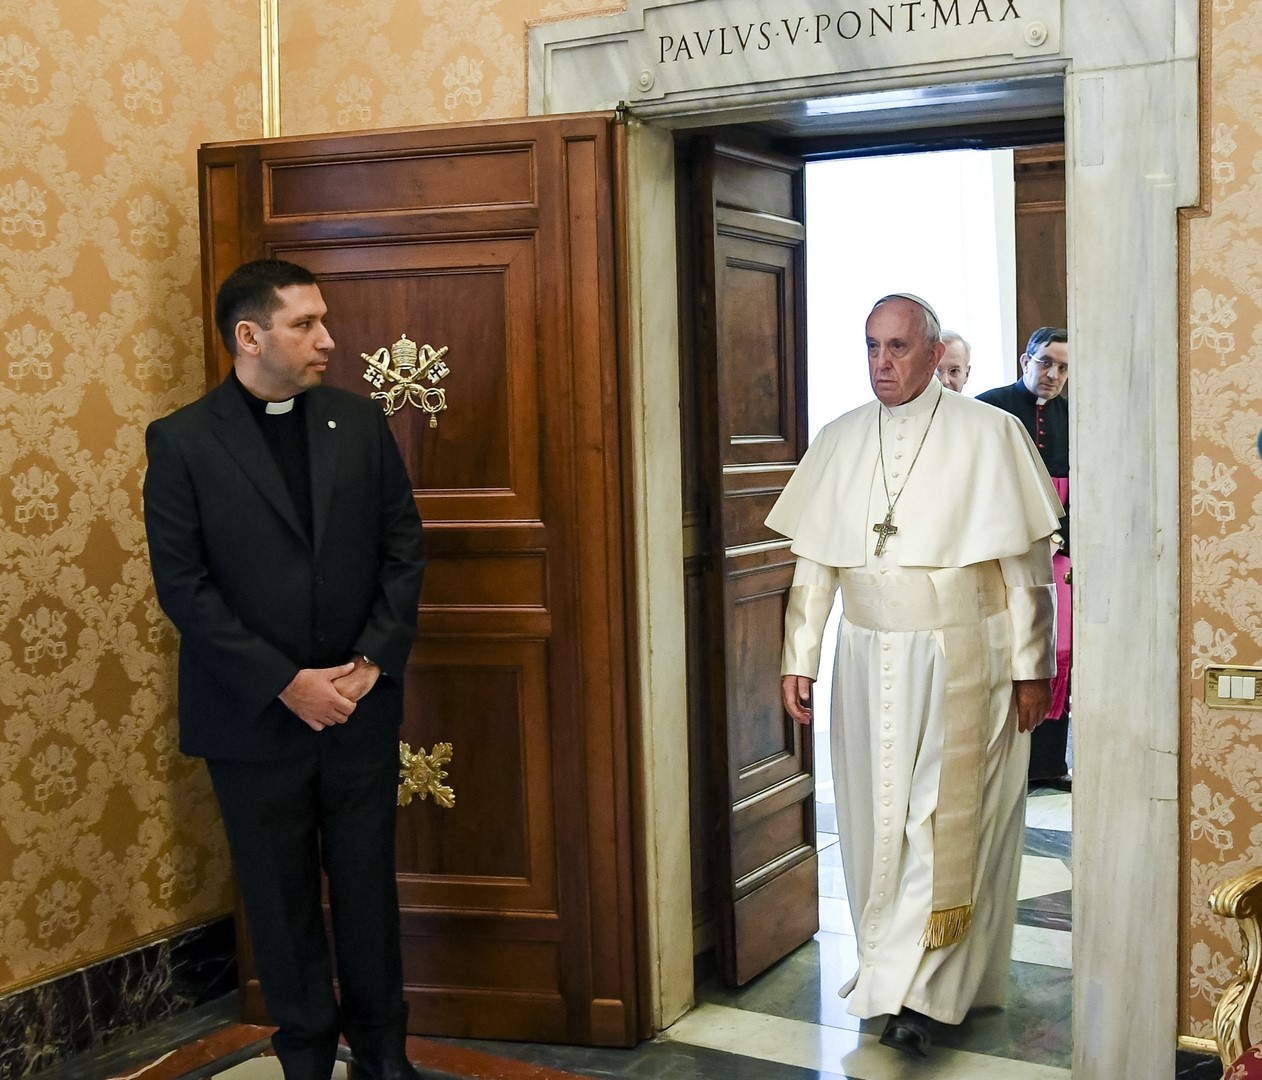 Vaticano: Francisco se reúne a menudo con víctimas de abusos sexuales